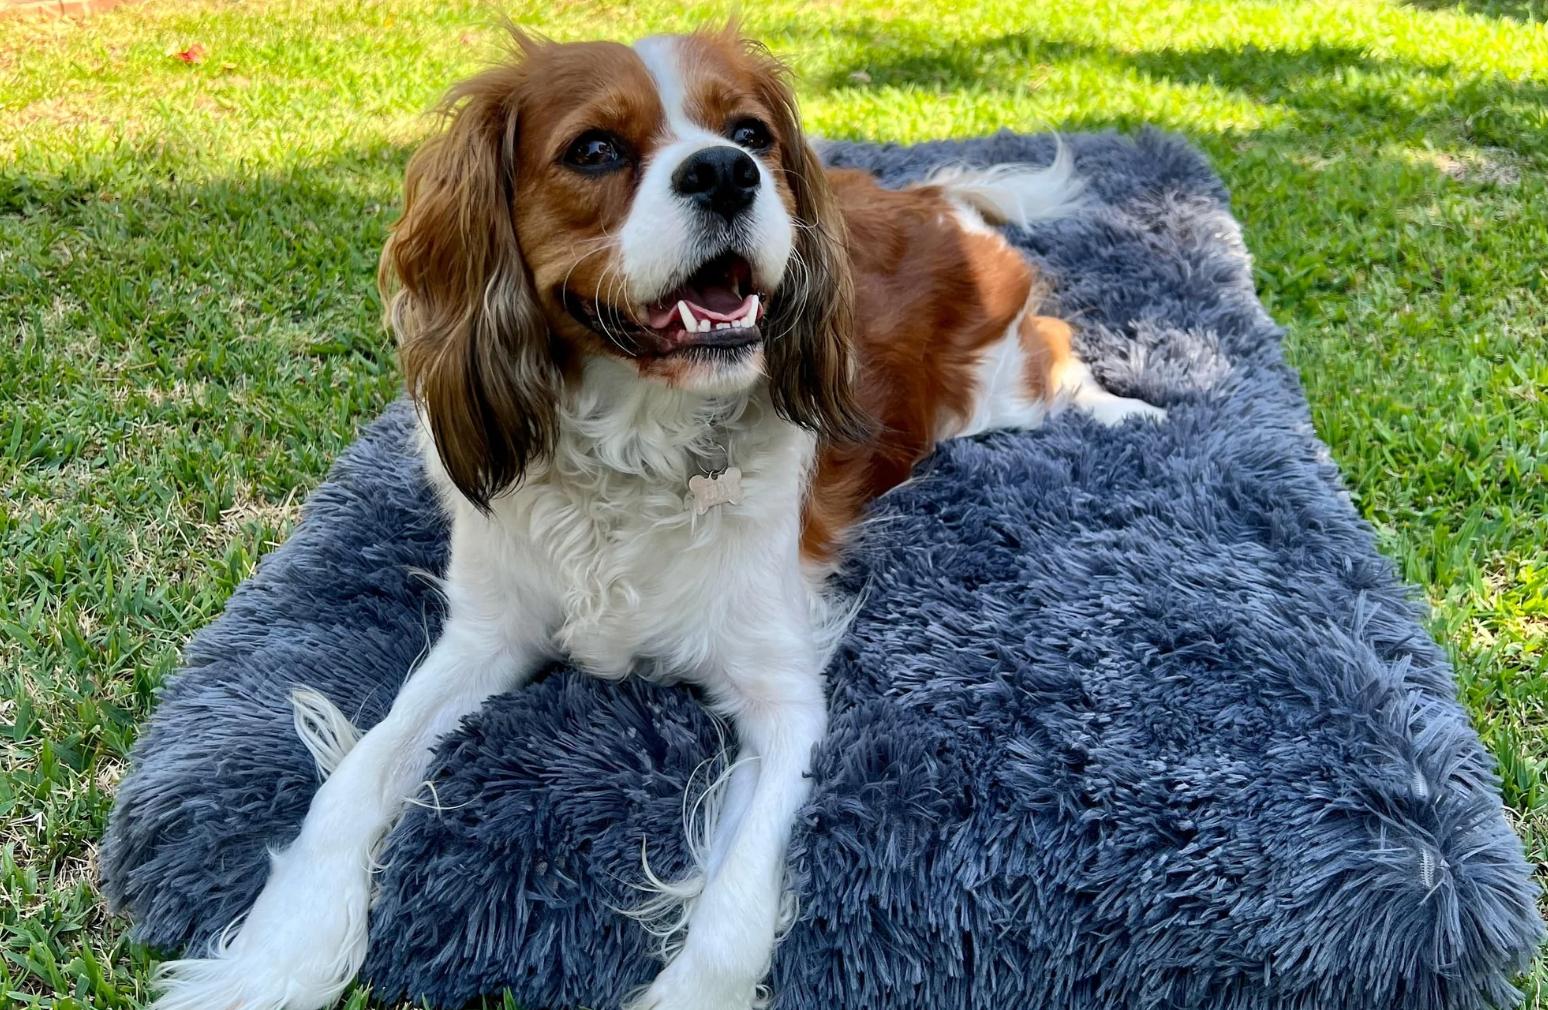 Do dogs like dog beds